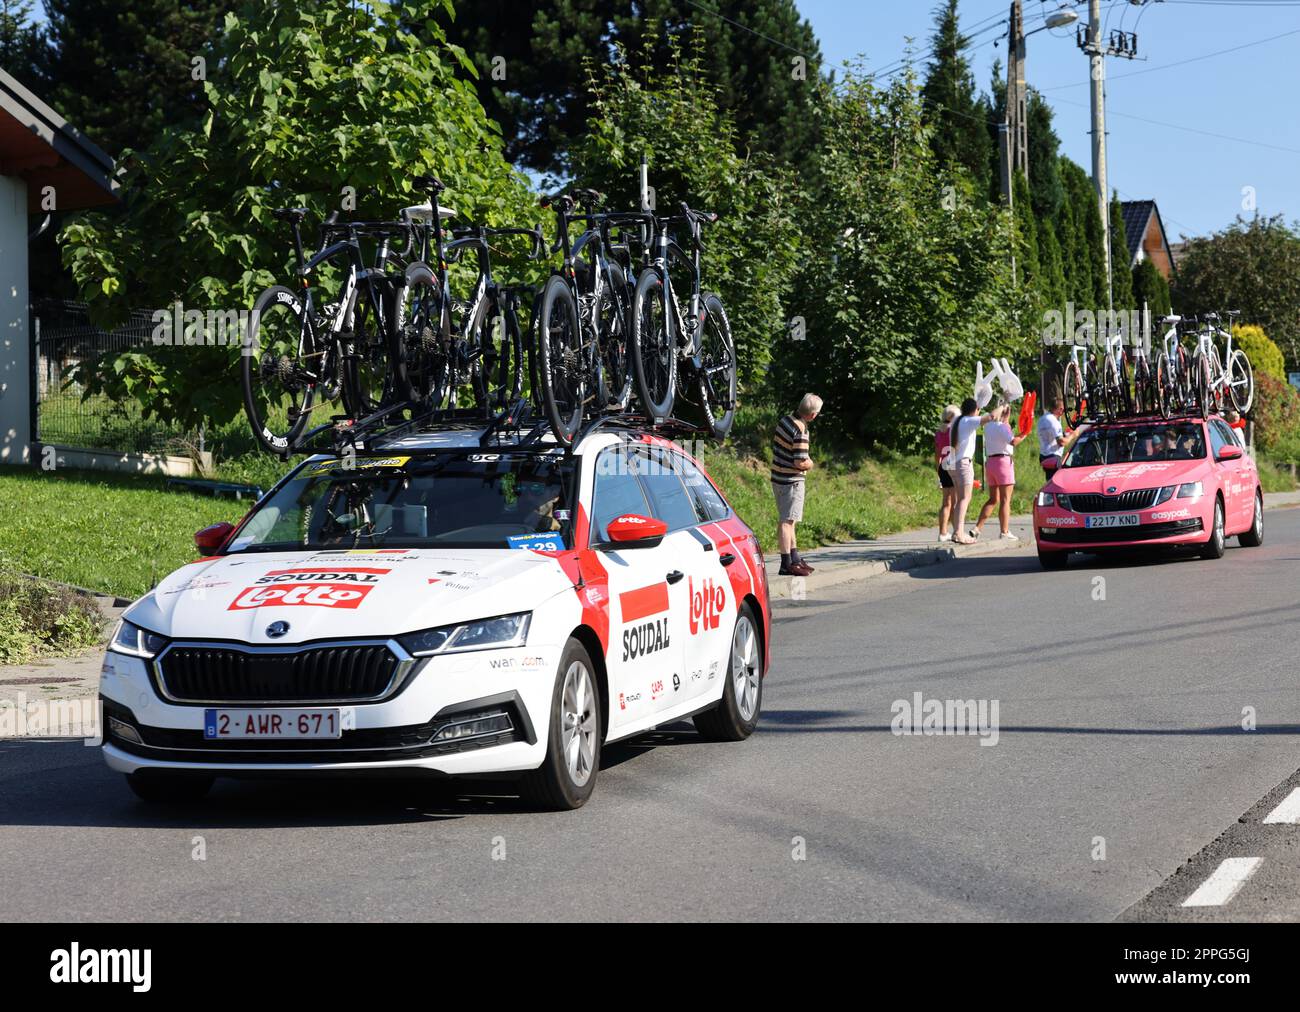 Cracovia, Polonia - 5 agosto 2022: Veicolo del team lotto Soudal sul percorso del Tour de Pologne UCI â€“ World Tour, tappa 7 Skawina - Cracovia. Il più grande evento ciclistico dell'Europa orientale. Foto Stock